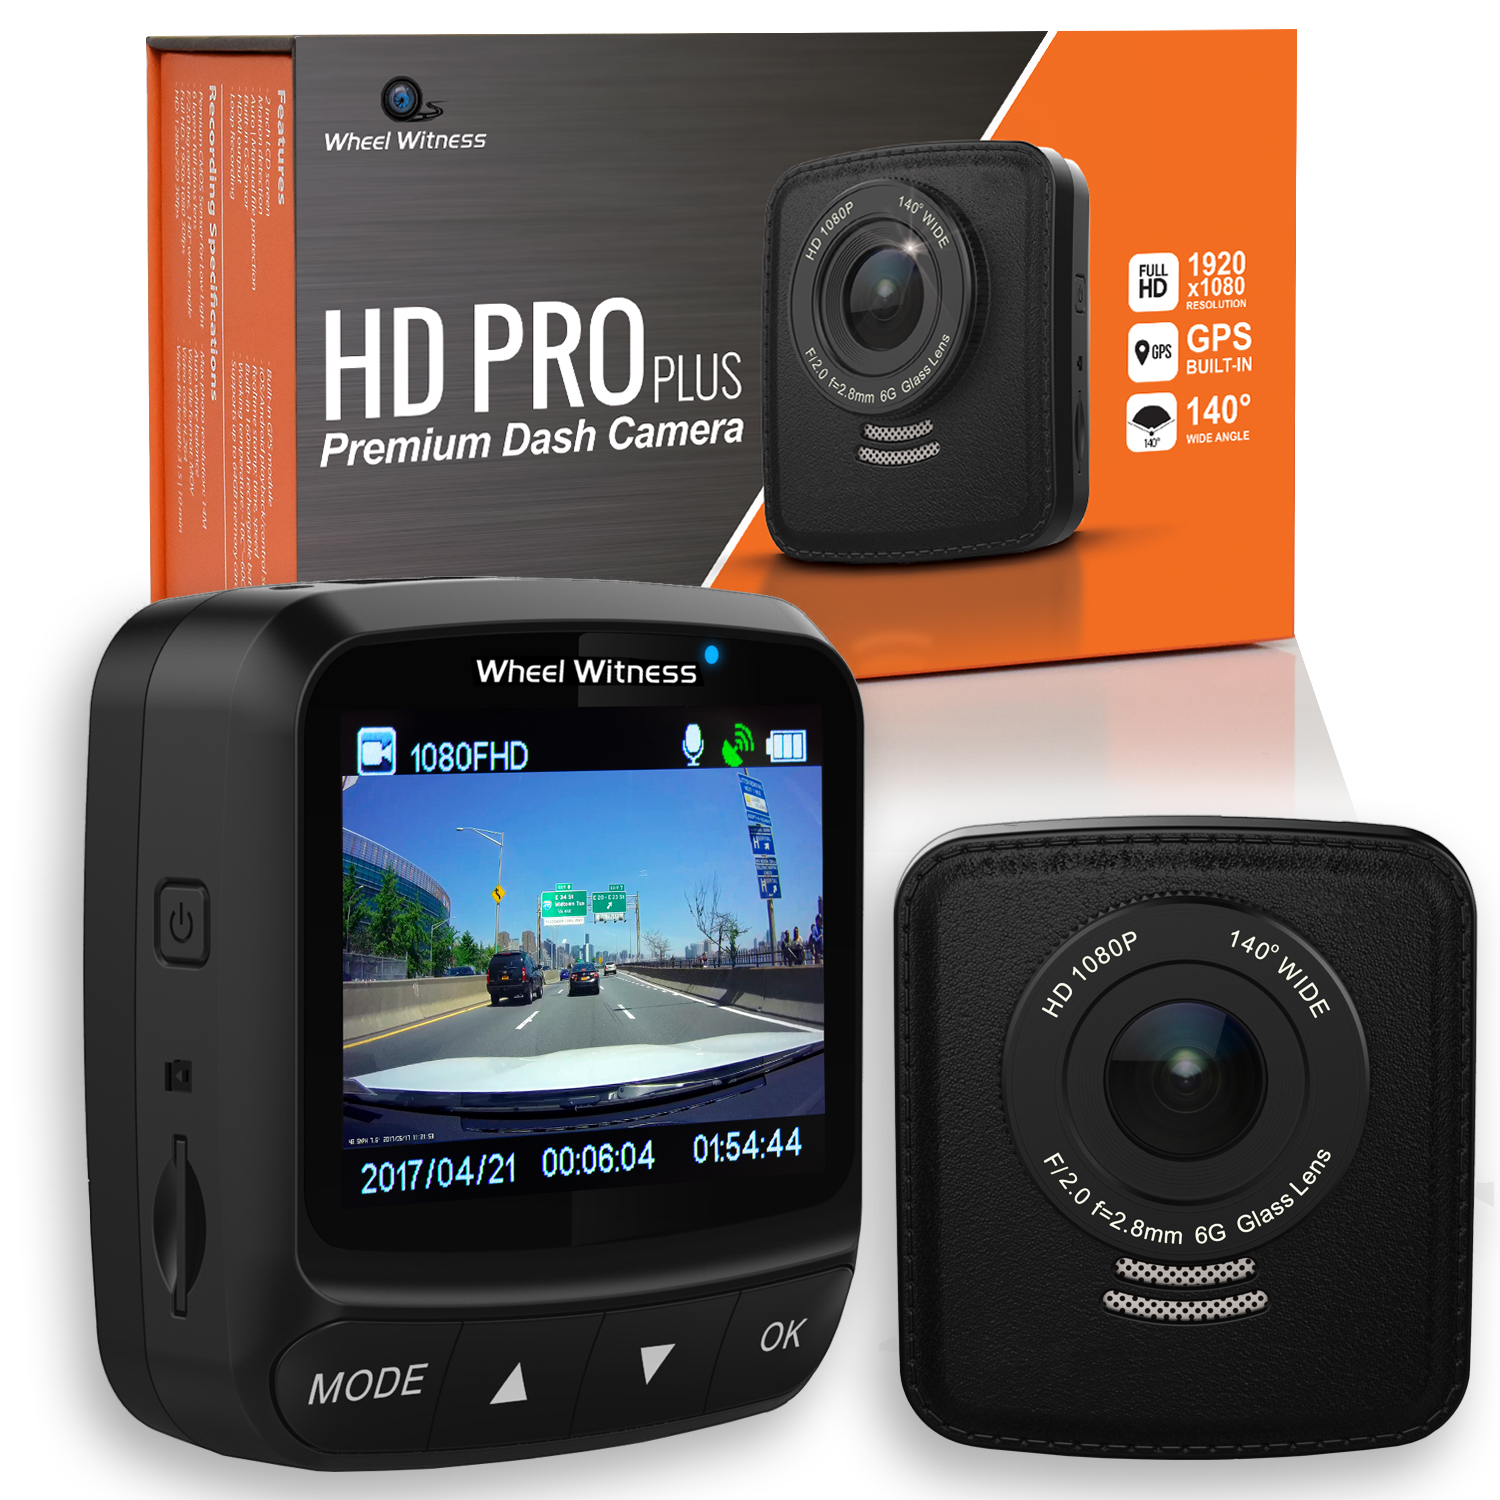 Wheel Witness HD PRO Plus Premium Dash Cam